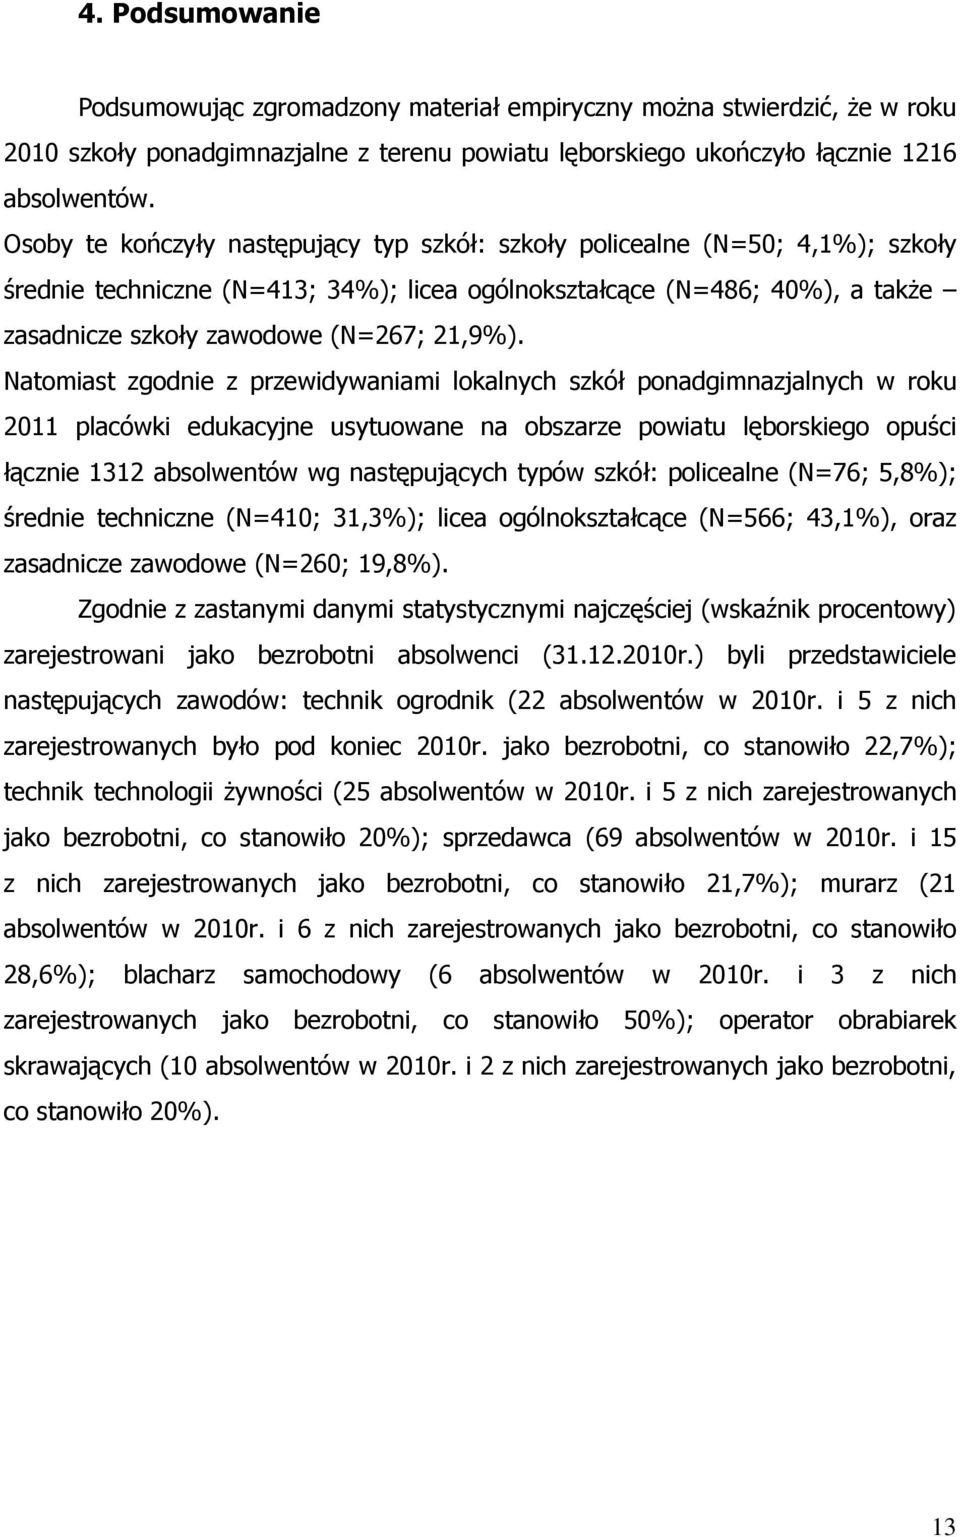 Natomiast zgodnie z przewidywaniami lokalnych szkół ponadgimnazjalnych w roku 2011 placówki edukacyjne usytuowane na obszarze powiatu lęborskiego opuści łącznie 1312 absolwentów wg następujących